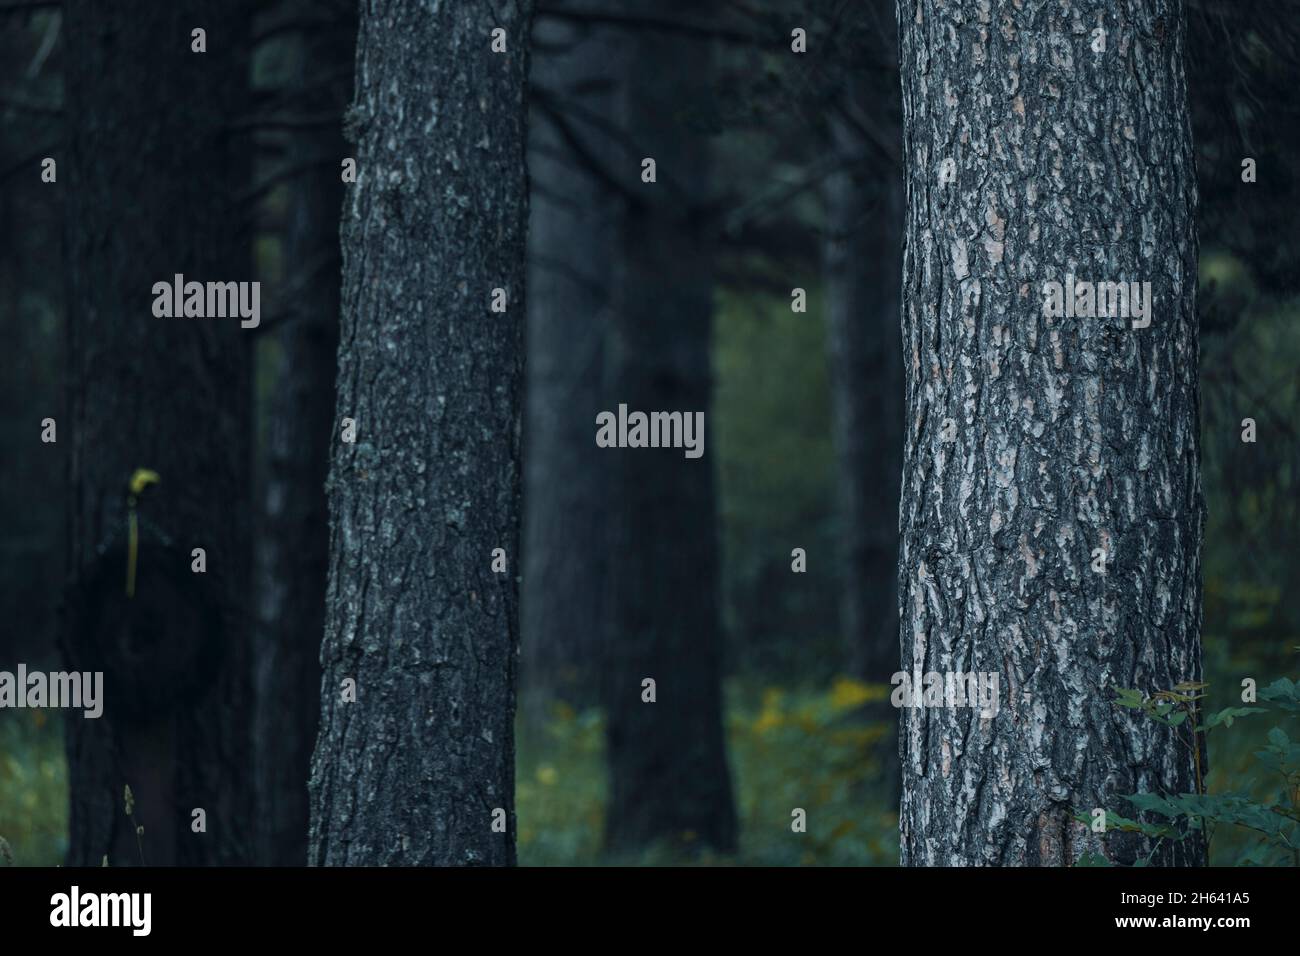 primo piano di alberi tronchi nella natura boschi foresta - sfondo del concetto di parco ambiente - immagine di colore verde per la cura della terra e salvare il pianeta Foto Stock